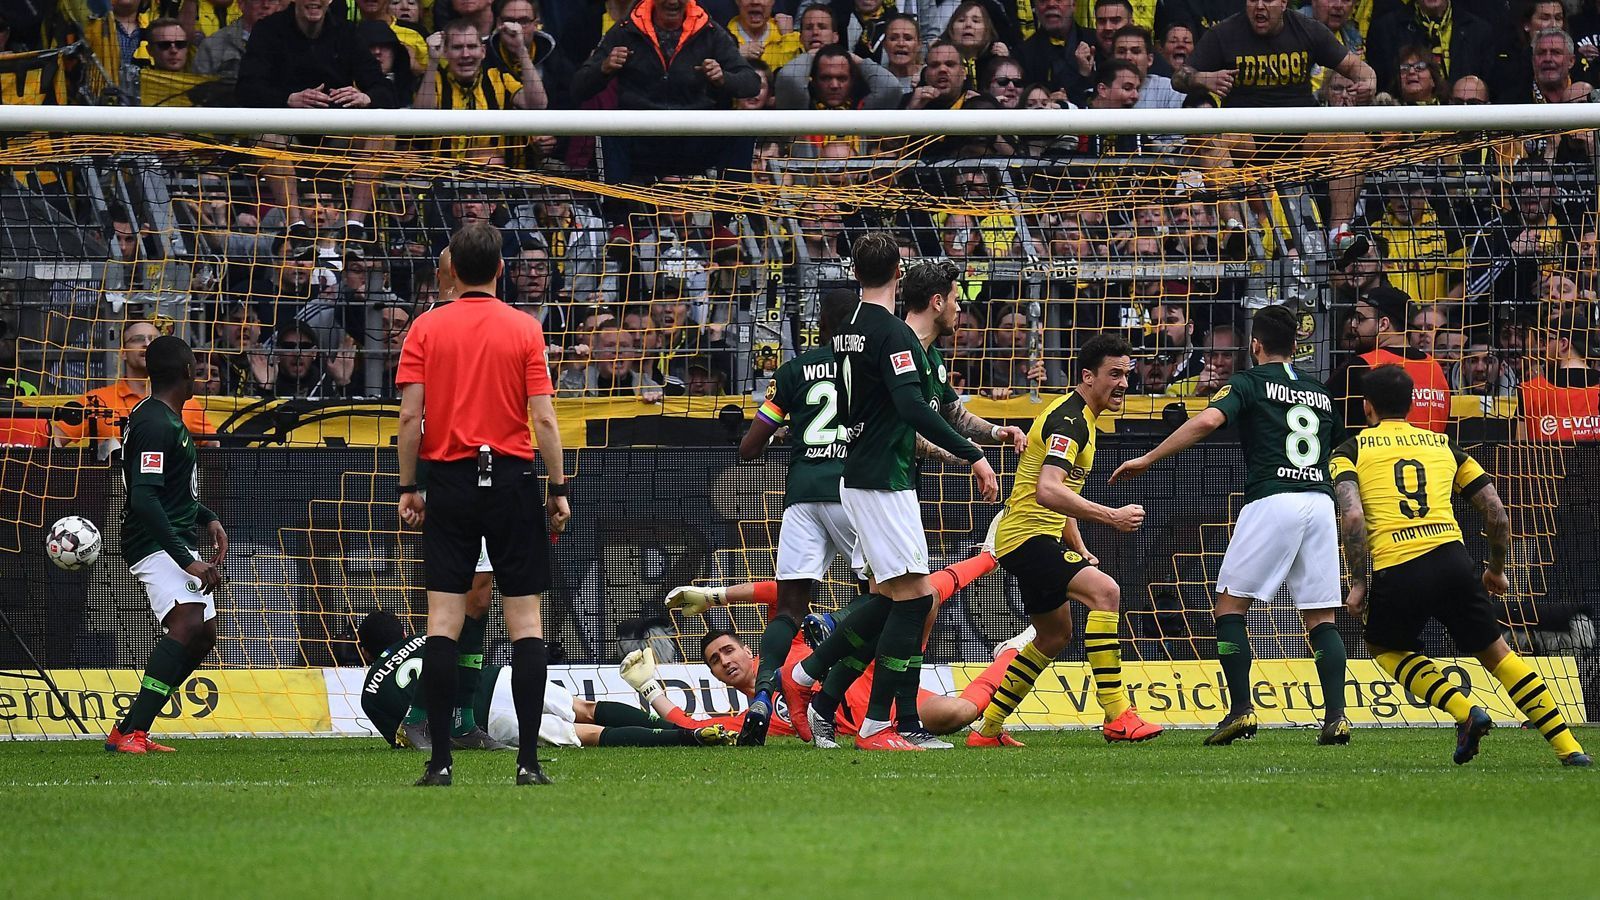 
                <strong>Paco Alcacer: Der Rekordmann der 90. Minute</strong><br>
                Dortmunds Paco Alcacer (re., Nr. 9) drückte dem BVB-Spiel am 27. Spieltag mal wieder entscheidend seinen Stempel auf. Der Spanier erzielte beim hart erkämpften 2:0-Sieg über den VfL Wolfsburg beide Treffer. Den Führungstreffer besorgte Alcacer erst in der 90. Minute per Freistoß und stellte damit einen Bundesliga-Rekord auf! Denn für den Dortmunder Torjäger war es bereits das fünfte Saisontor in der 90. Minute. So oft wie er, hat noch kein anderer Bundesliga-Profi innerhalb einer Spielzeit in der allerletzten Minute der regulären Spielzeit getroffen. (Quelle: Optafranz/twitter)
              